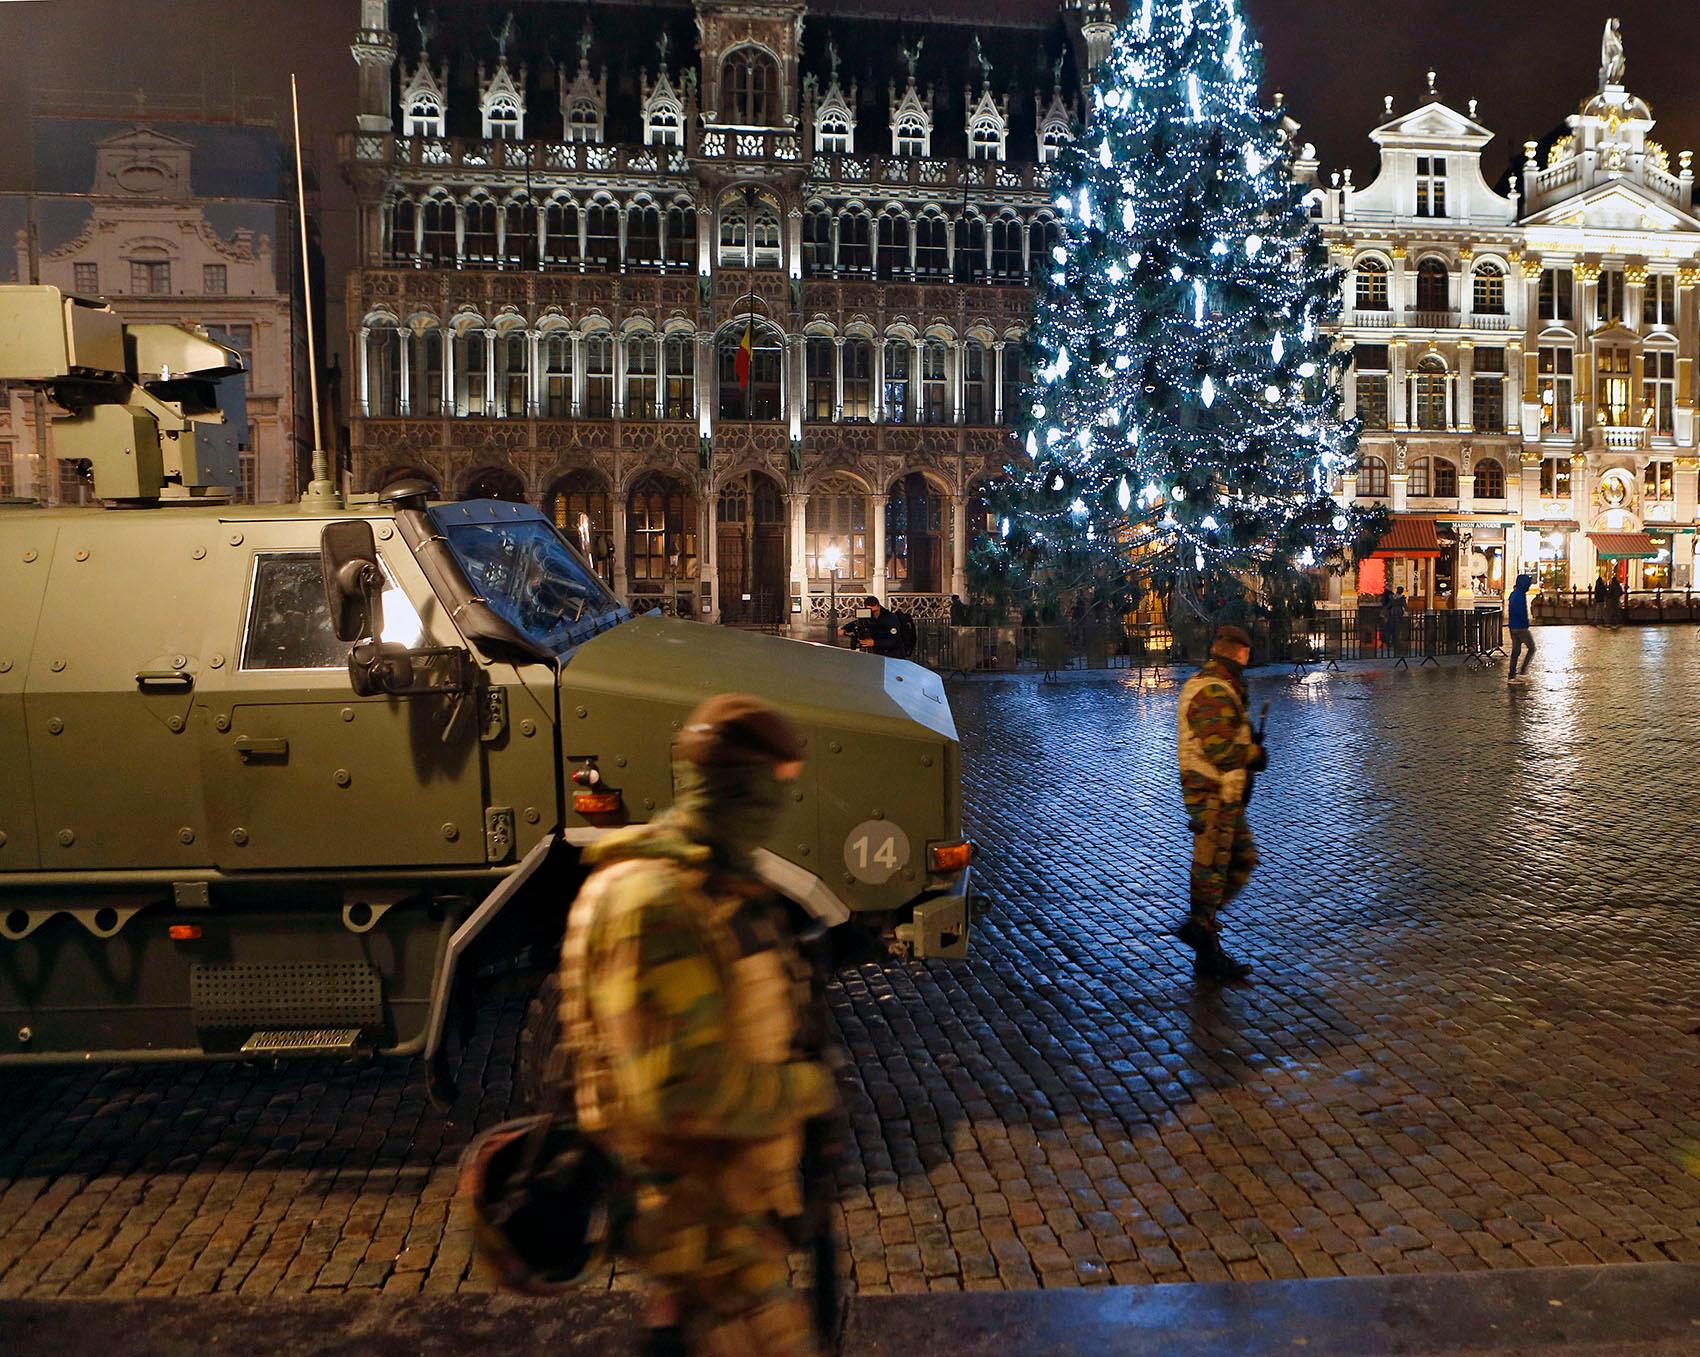 Ett julpyntat Grand Place i Bryssel - med pansarbil och soldater.